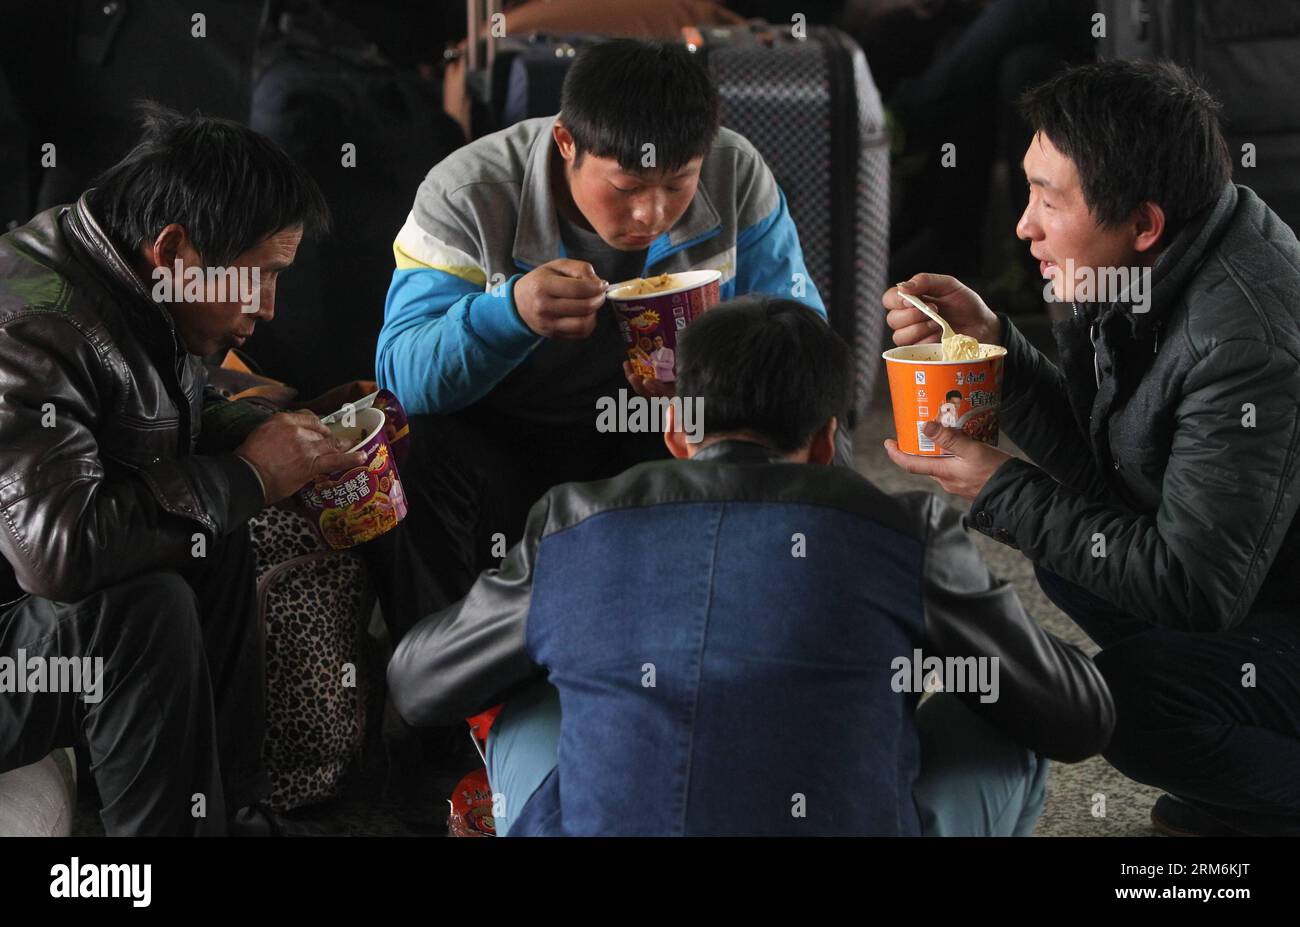 (140118) -- SHANGHAI, 18 gennaio 2014 (Xinhua) -- il passeggero li Jianfu (1st R) mangia spaghetti istantanei alla stazione ferroviaria di Shanghai, East China S Shanghai, 18 gennaio 2014. Un viaggio in treno a lunga distanza non può scoraggiare il desiderio delle persone di riunirsi con i familiari durante il capodanno lunare cinese. Hanno provato tutti i mezzi per ottenere un biglietto per tornare alla città natale prima del festival. (Xinhua/Ding Ting) (cjq) CINA-SHANGHAI-LUNAR NEW YEAR TRAVEL RUSH (CN) PUBLICATIONxNOTxINxCHN Shanghai Jan 18 2014 XINHUA passeggero sinistro 1 ° mangia Instant Noodles ALLA stazione ferroviaria di Shanghai East China S Foto Stock